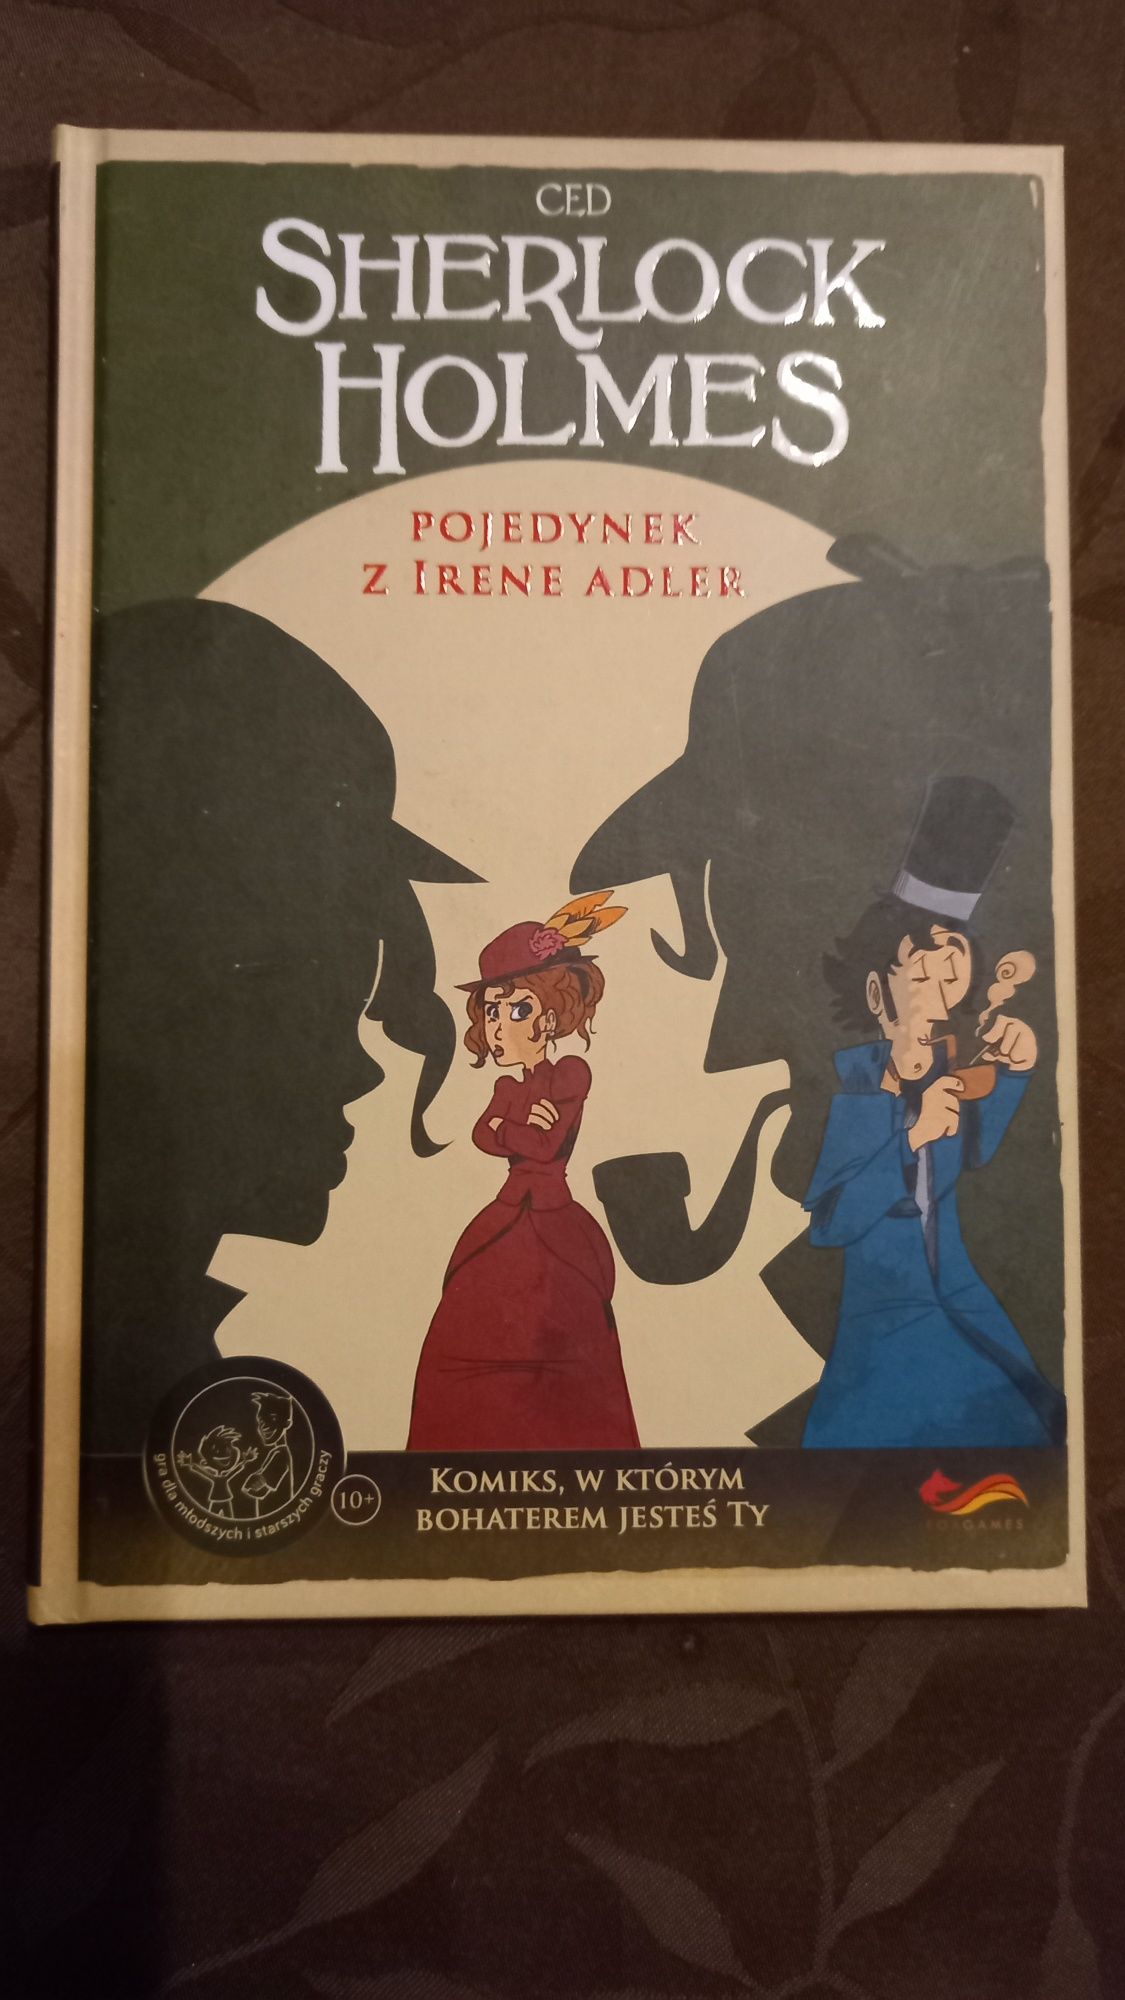 Sherlock Holmes "Pojedynek z Irene Adler" Nowa książka w formie komiks